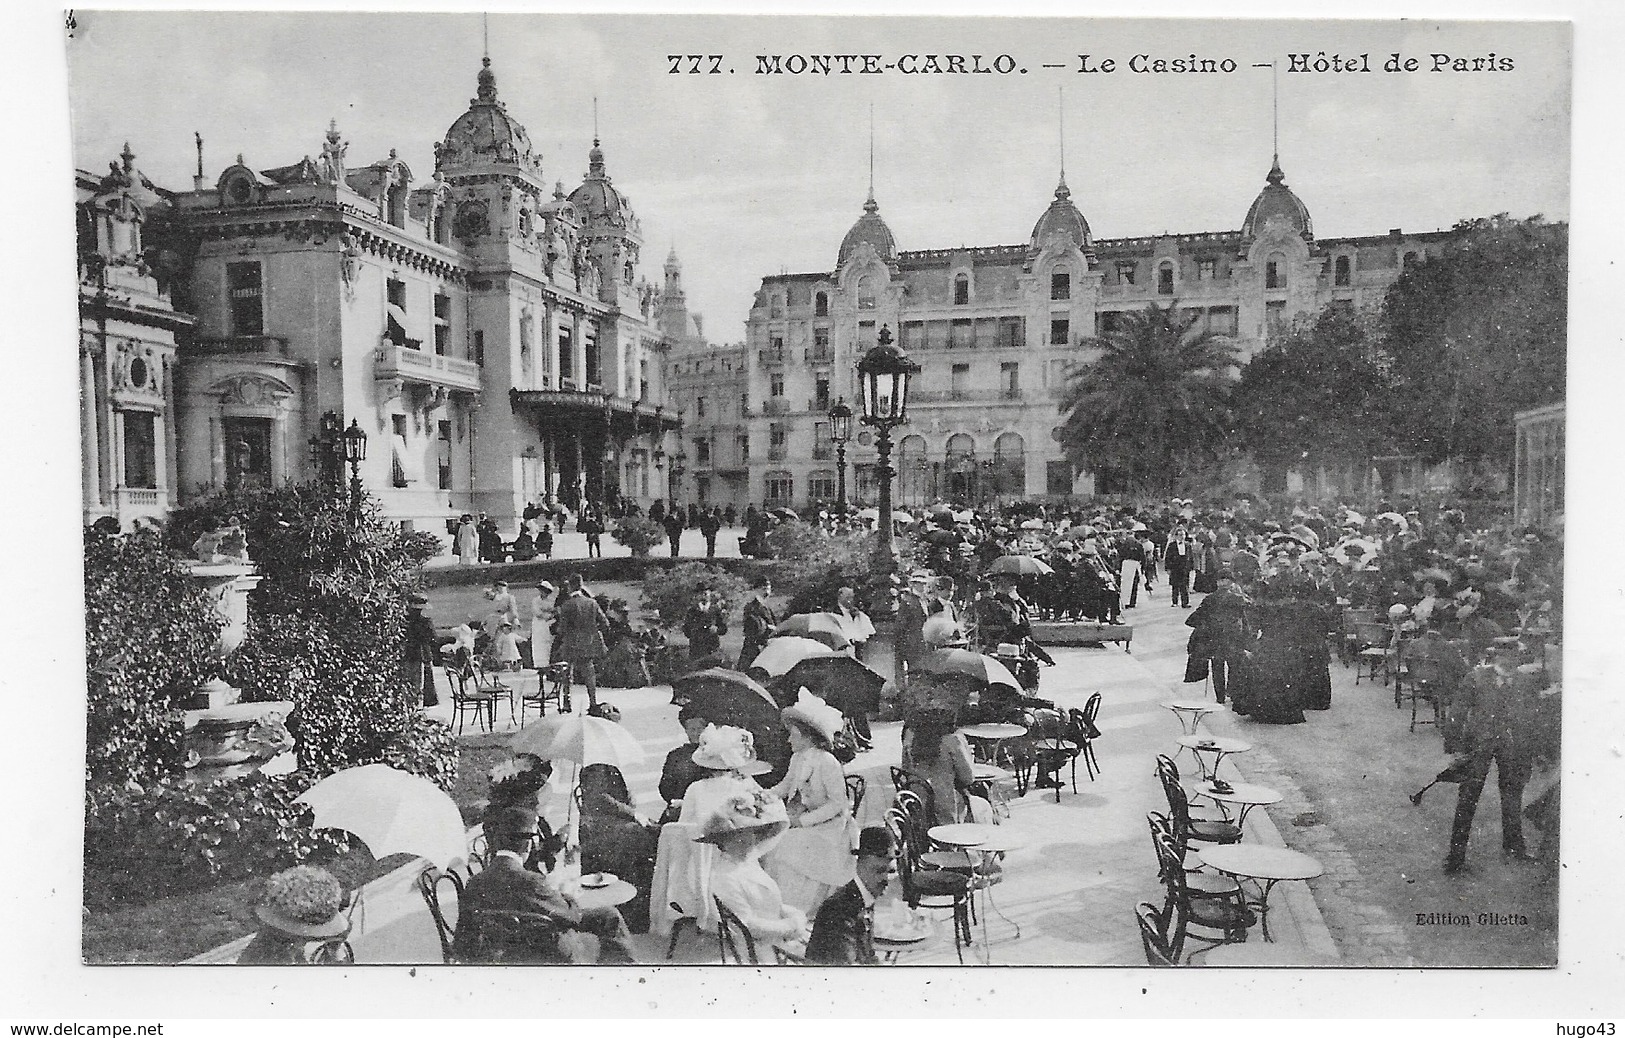 MONTE CARLO - N° 777 - LE CASINO - HOTEL DE PARIS AVEC PERSONNAGES - CPA NON VOYAGEE - Cafes & Restaurants